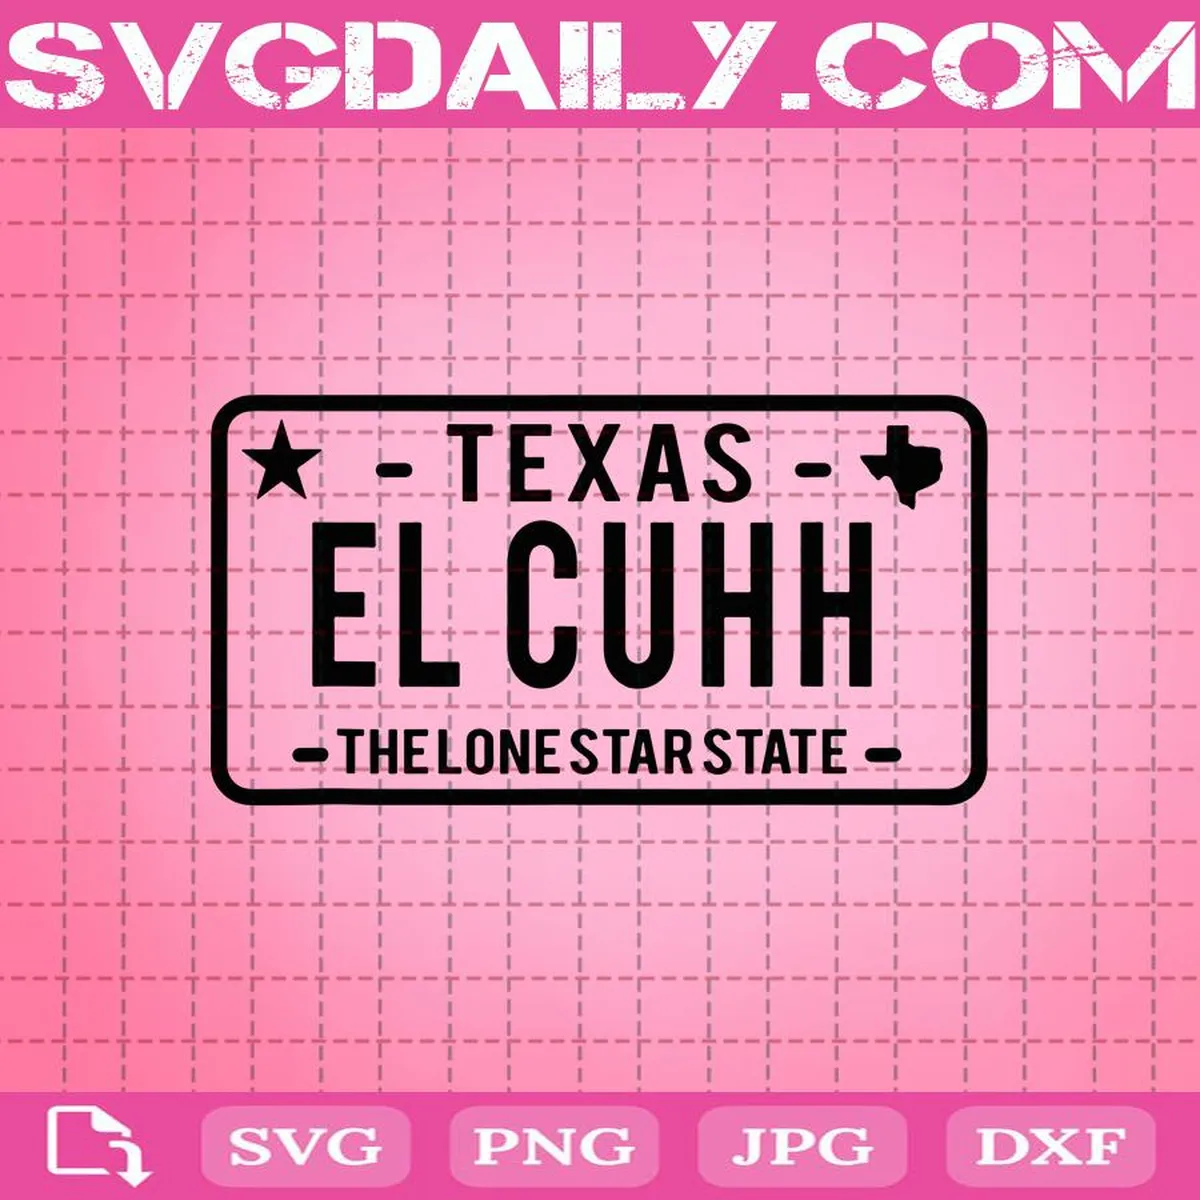 El Cuhh Texas License Plate Svg, El Cuhh Svg, Cricut Files, Clip Art, Instant Download, Digital Files, Svg, Png, Eps, Dxf